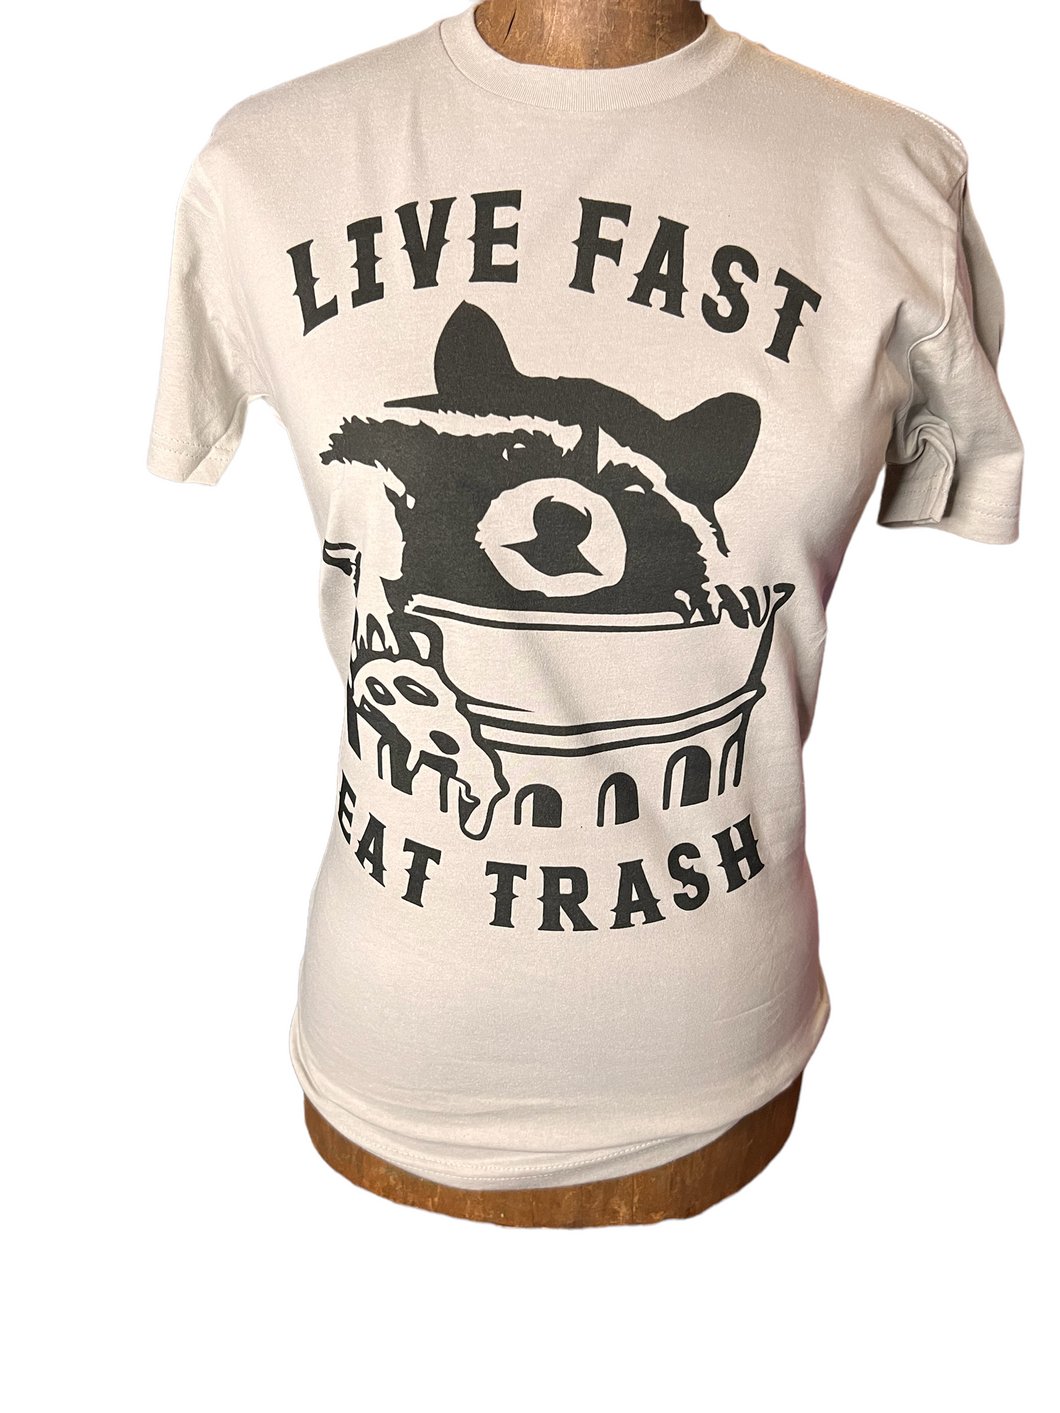 Live fast eat trash t shirt